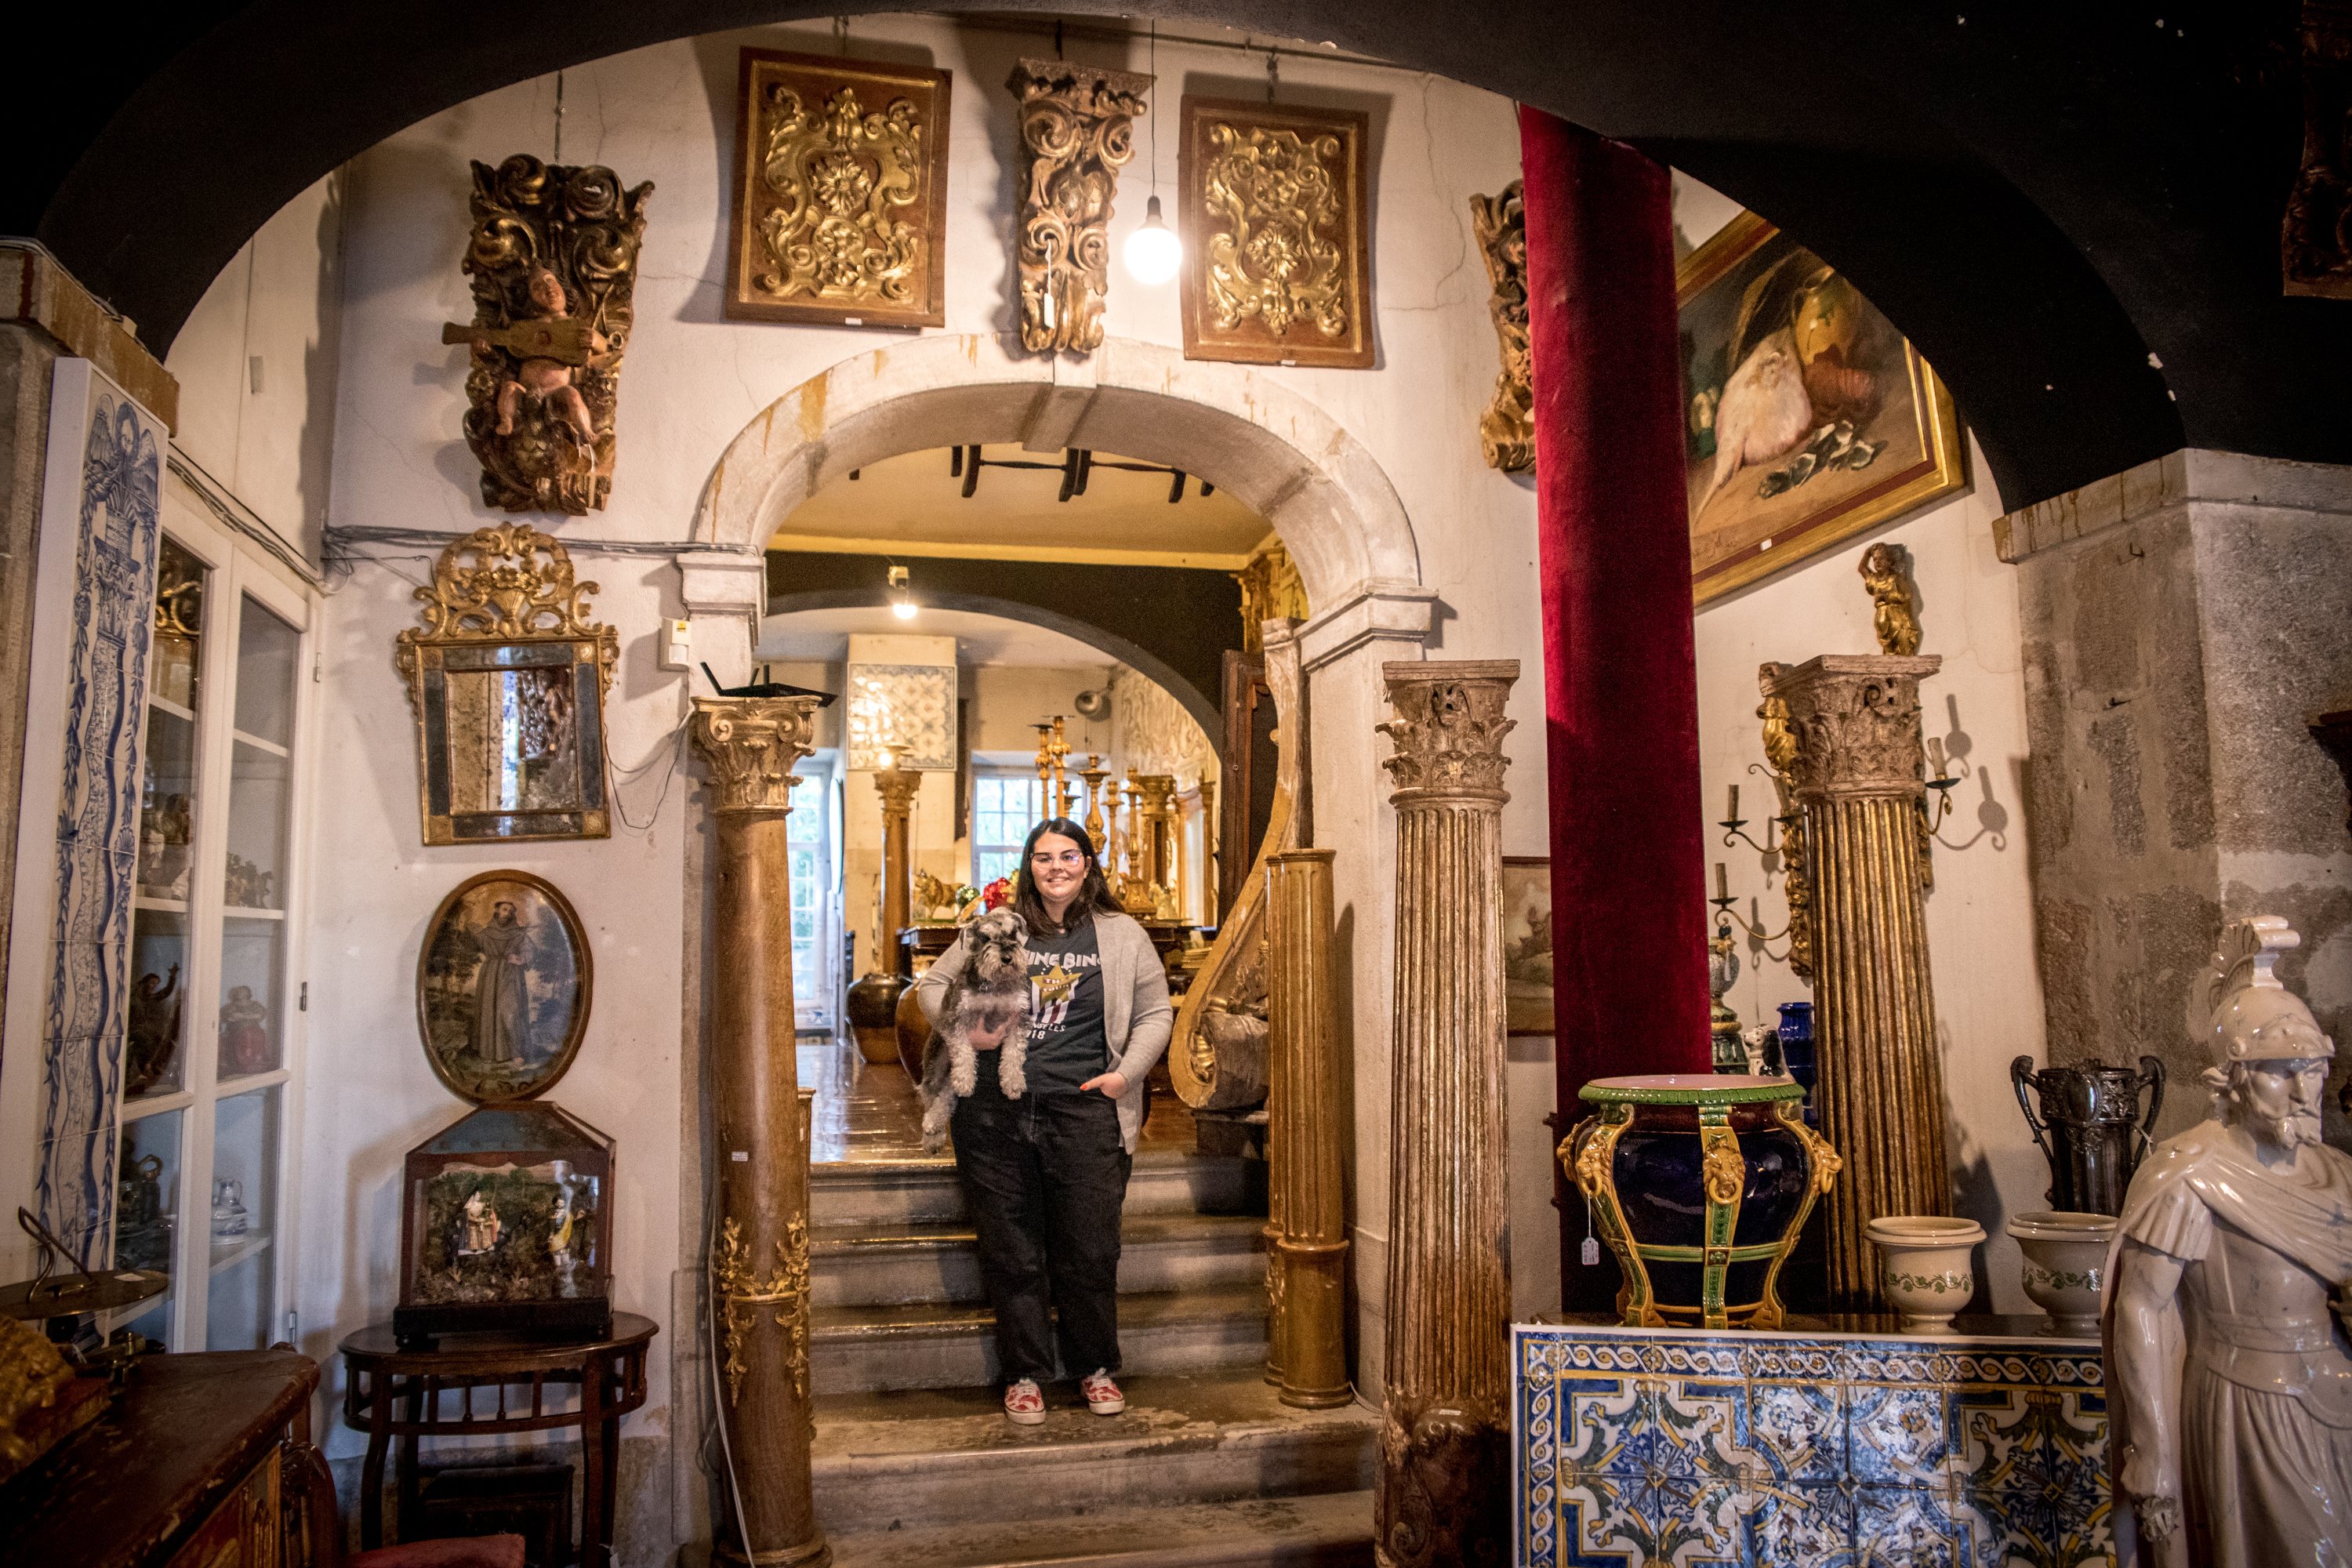 Entrevista a Verónica Leitão, a terceira geração ao leme da casa Solar Antiques, no Príncipe Real. É uma das lojas mais antigas do mundo de azulejos e artes decorativas, e faz 65 anos. 22 de Fevereiro de 2022 Príncipe Real, Lisboa TOMÁS SILVA/OBSERVADOR